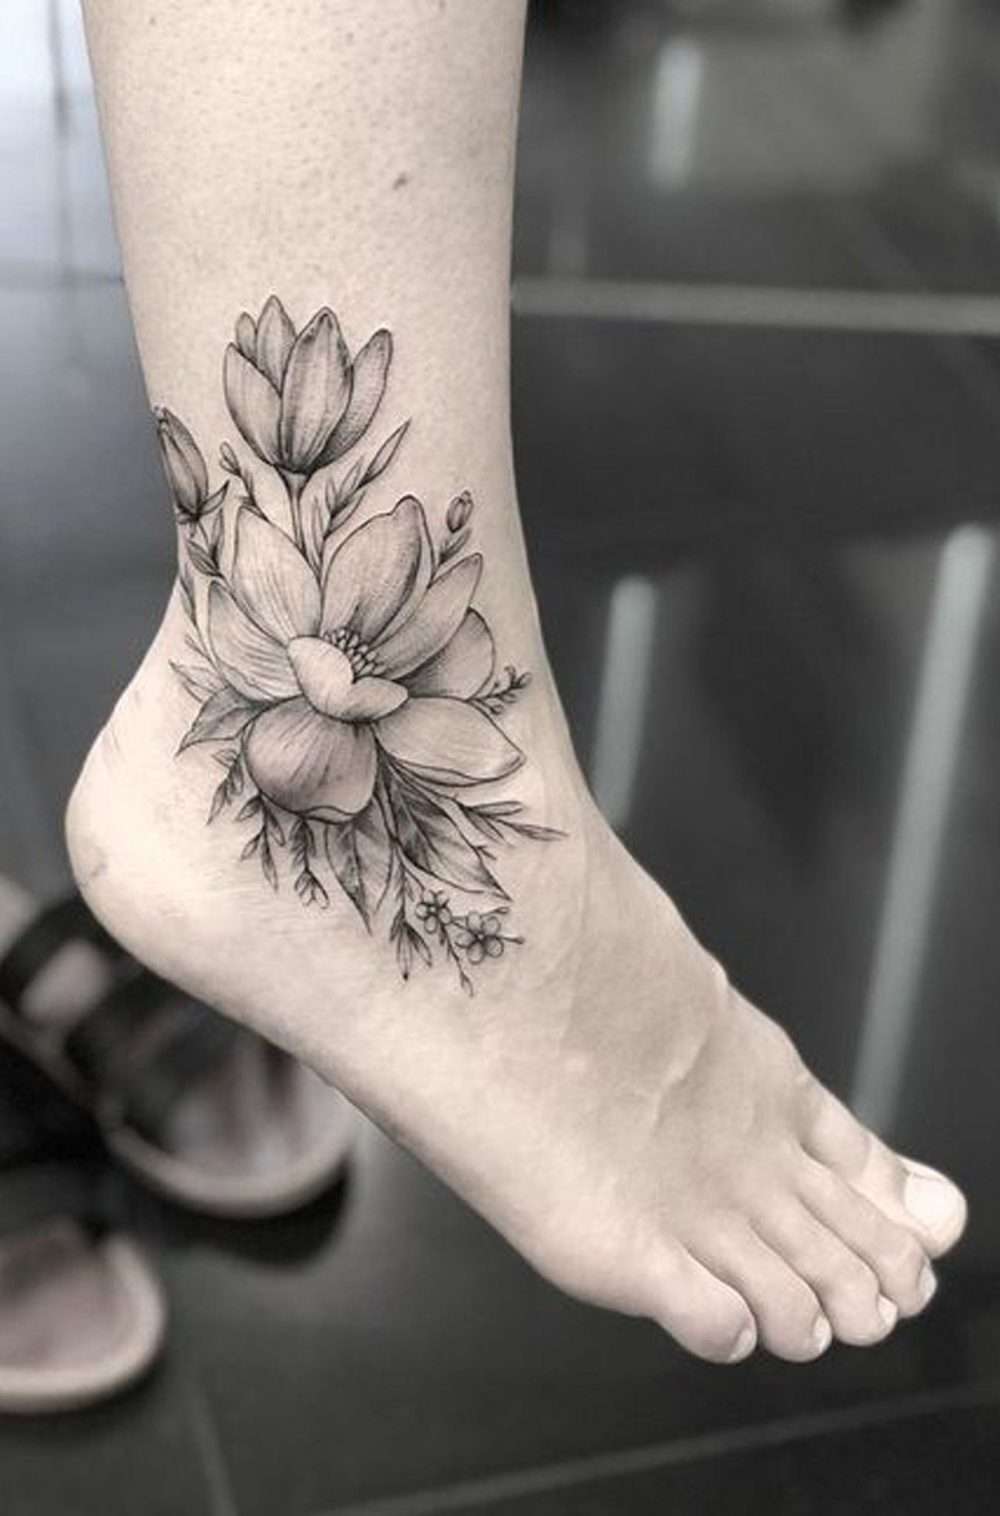 Tatuaje en el pie - flores